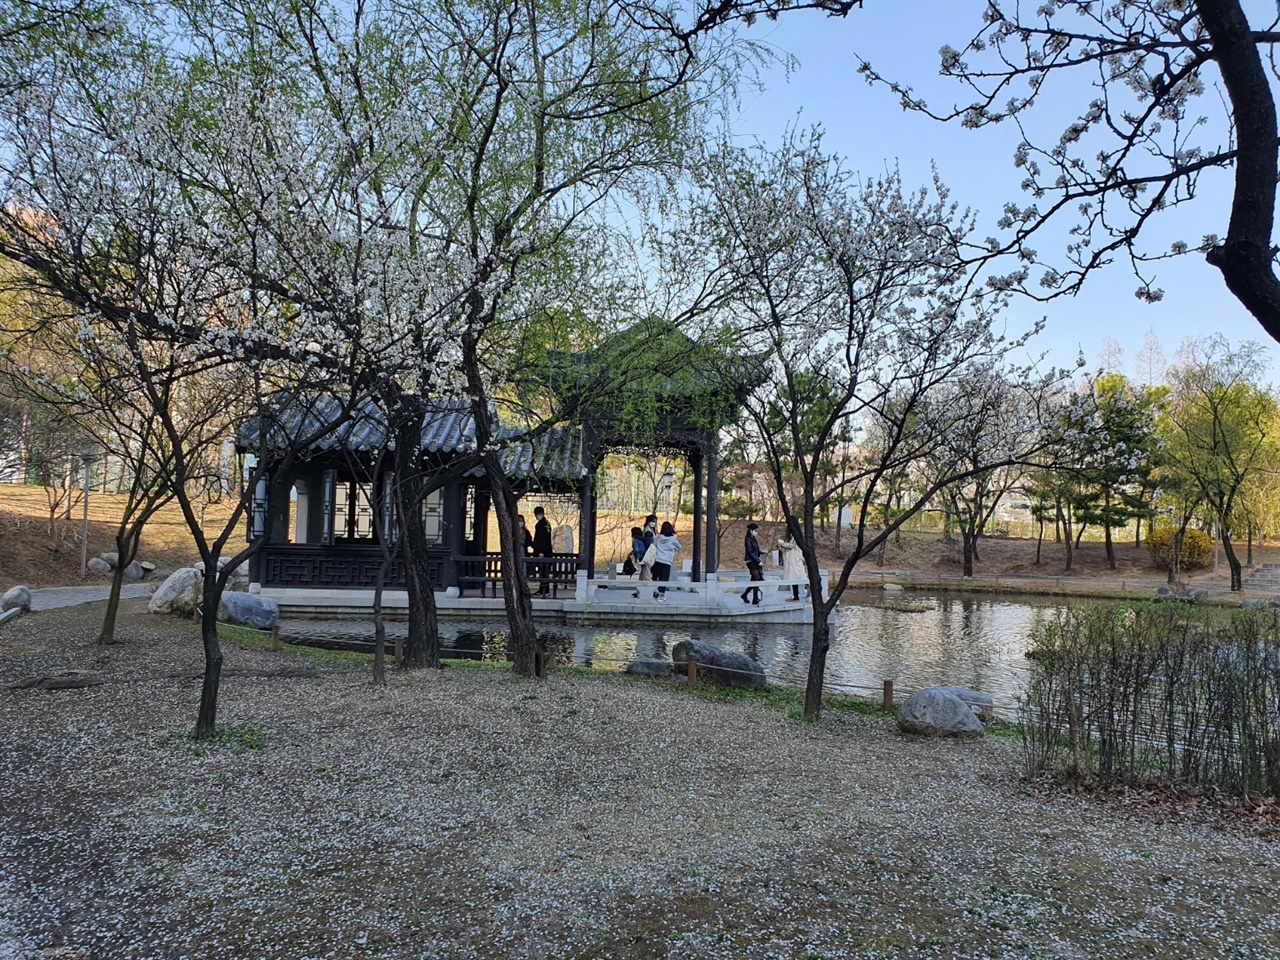 월화원의 뒷편에는 연못이 있으며 연못의 주위를 돌때마다 월화원의 다양한 경관이 펼쳐진다. 특히 베이징 이화원에서 보았던 돌로 만든 배인 월방(석방)을 여기서도 볼 수 있던 점이 신기했다.